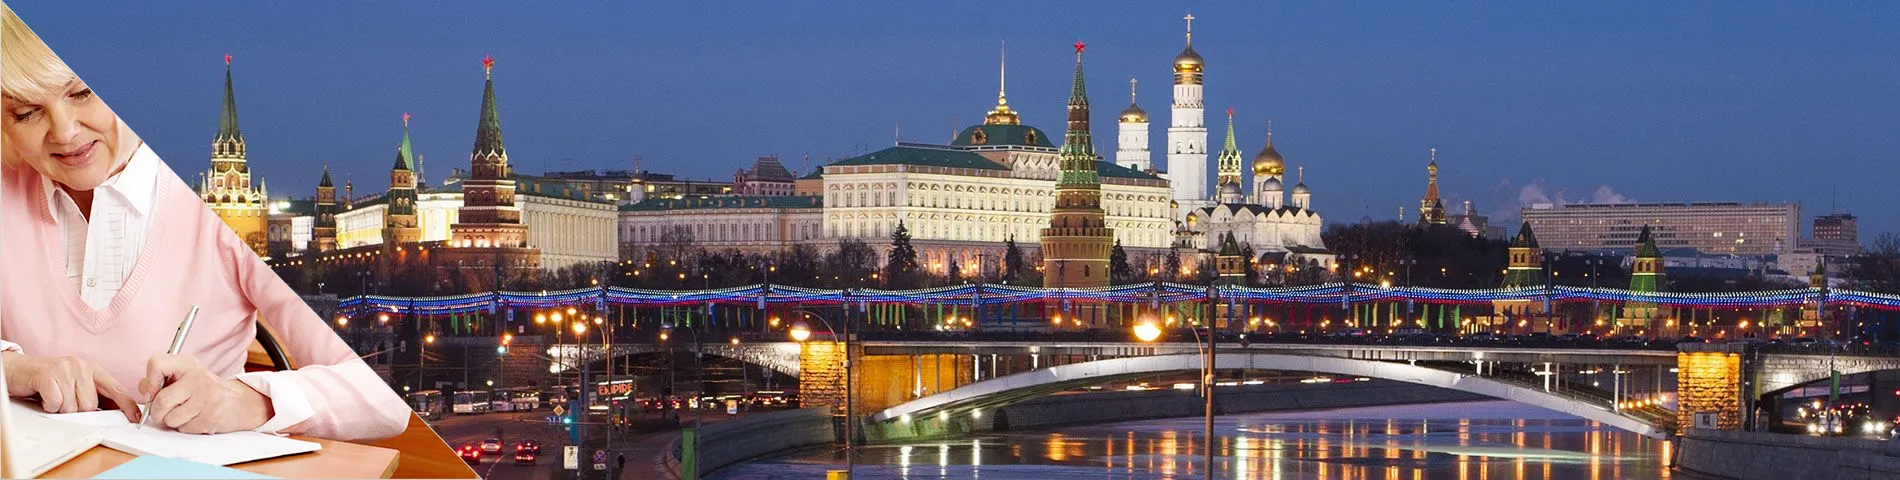 Москва - Курси для людей зрілого віку (50+)